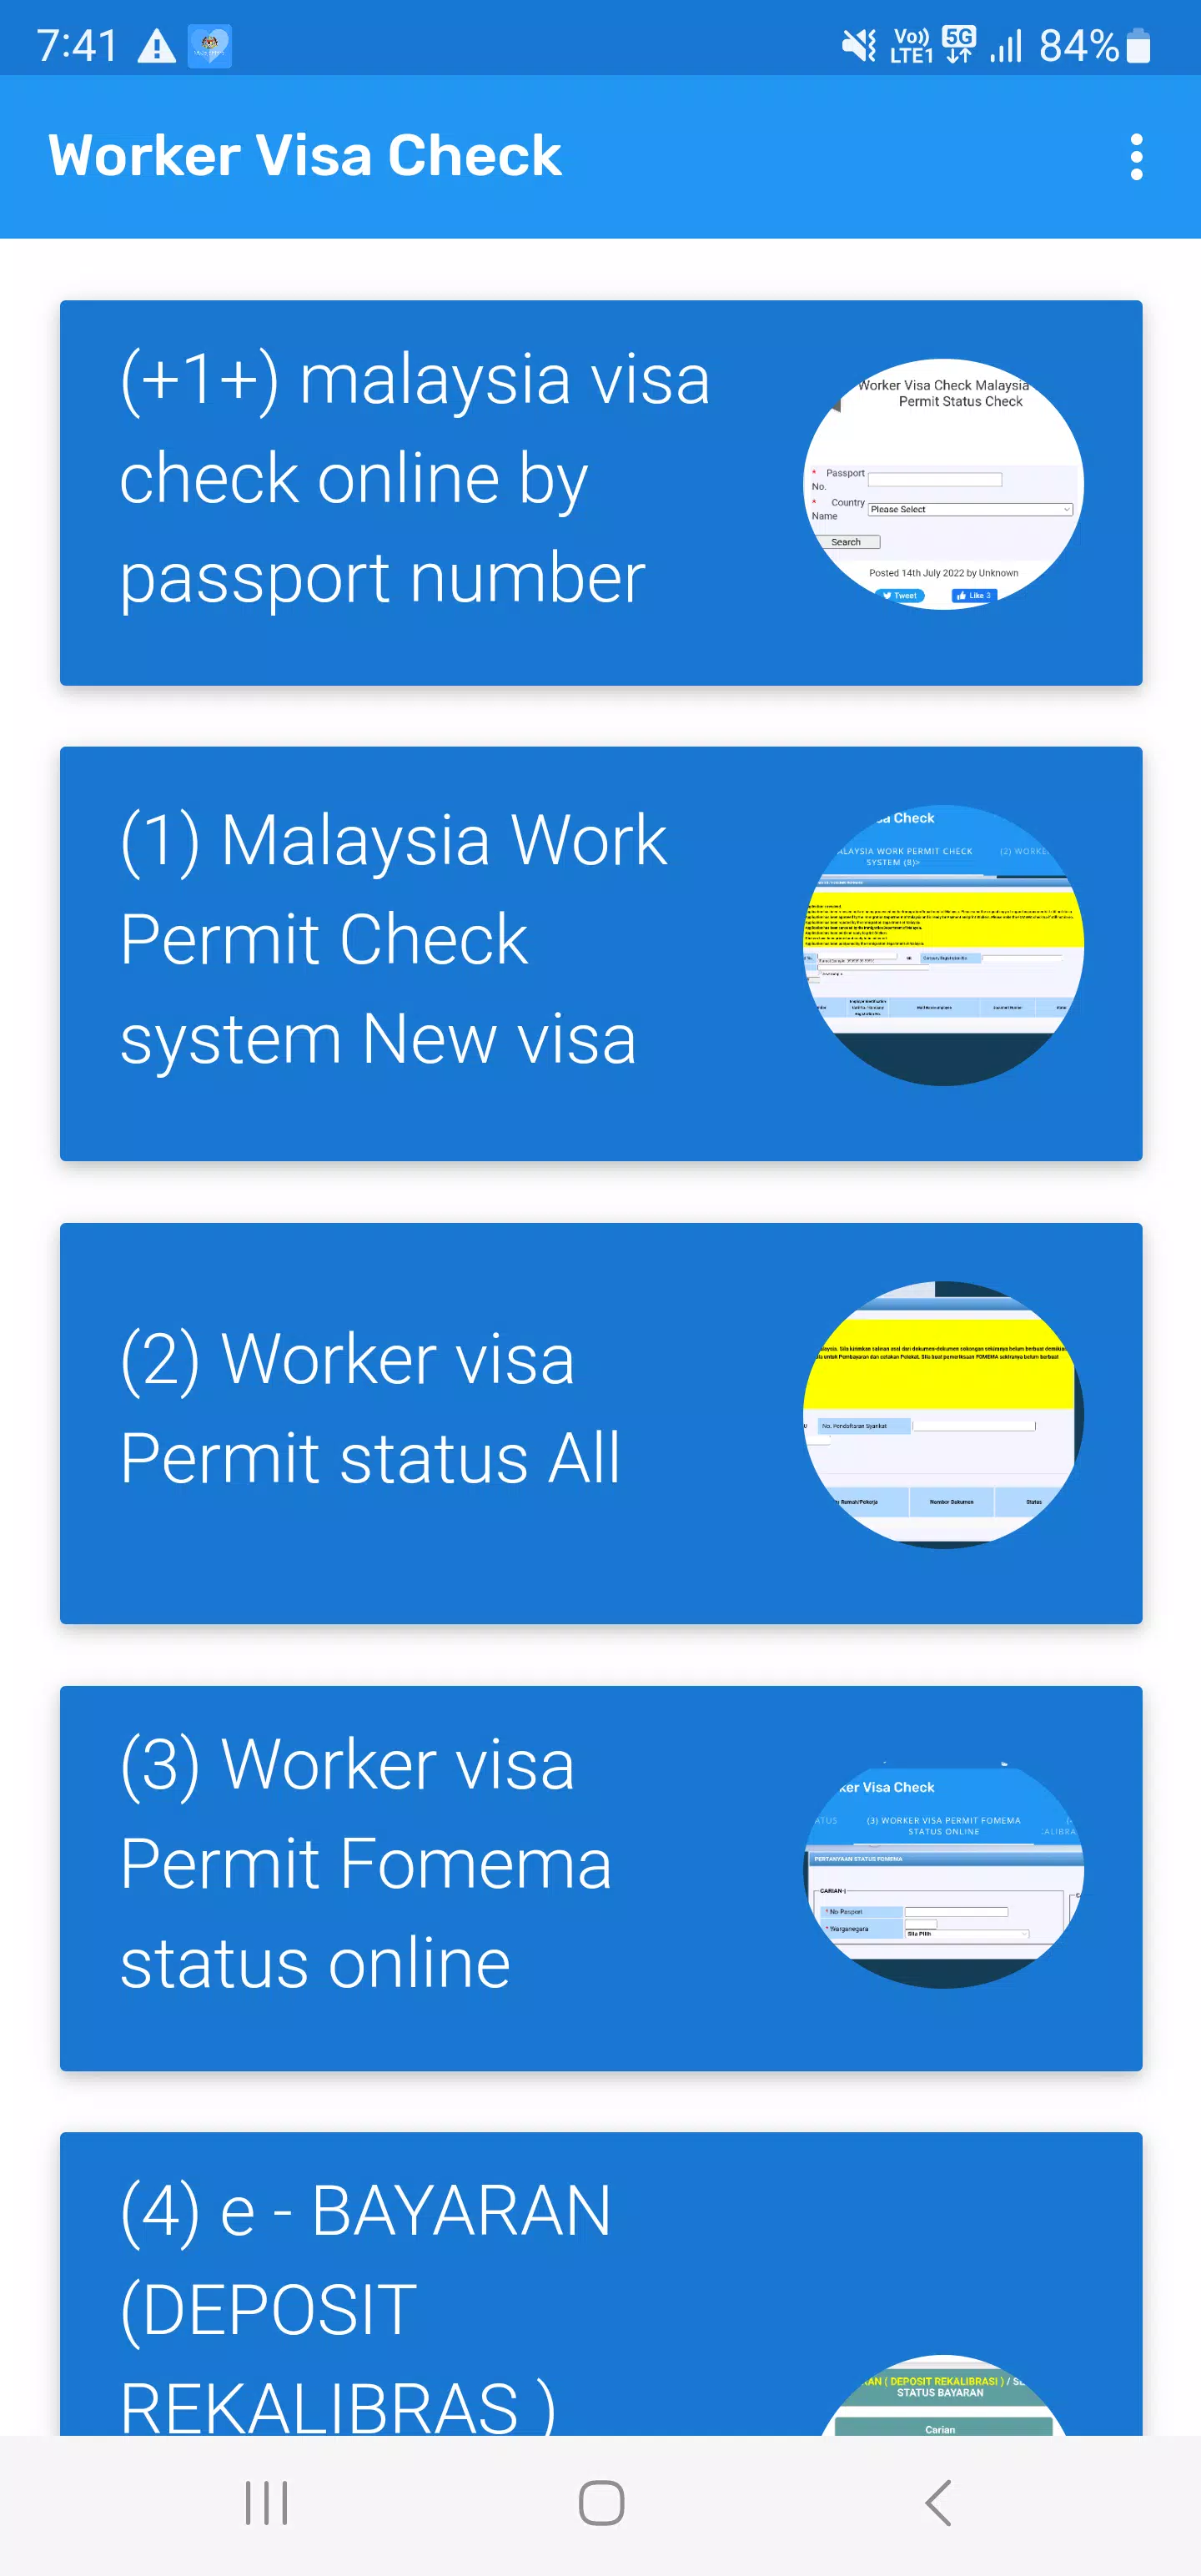 Visa checks